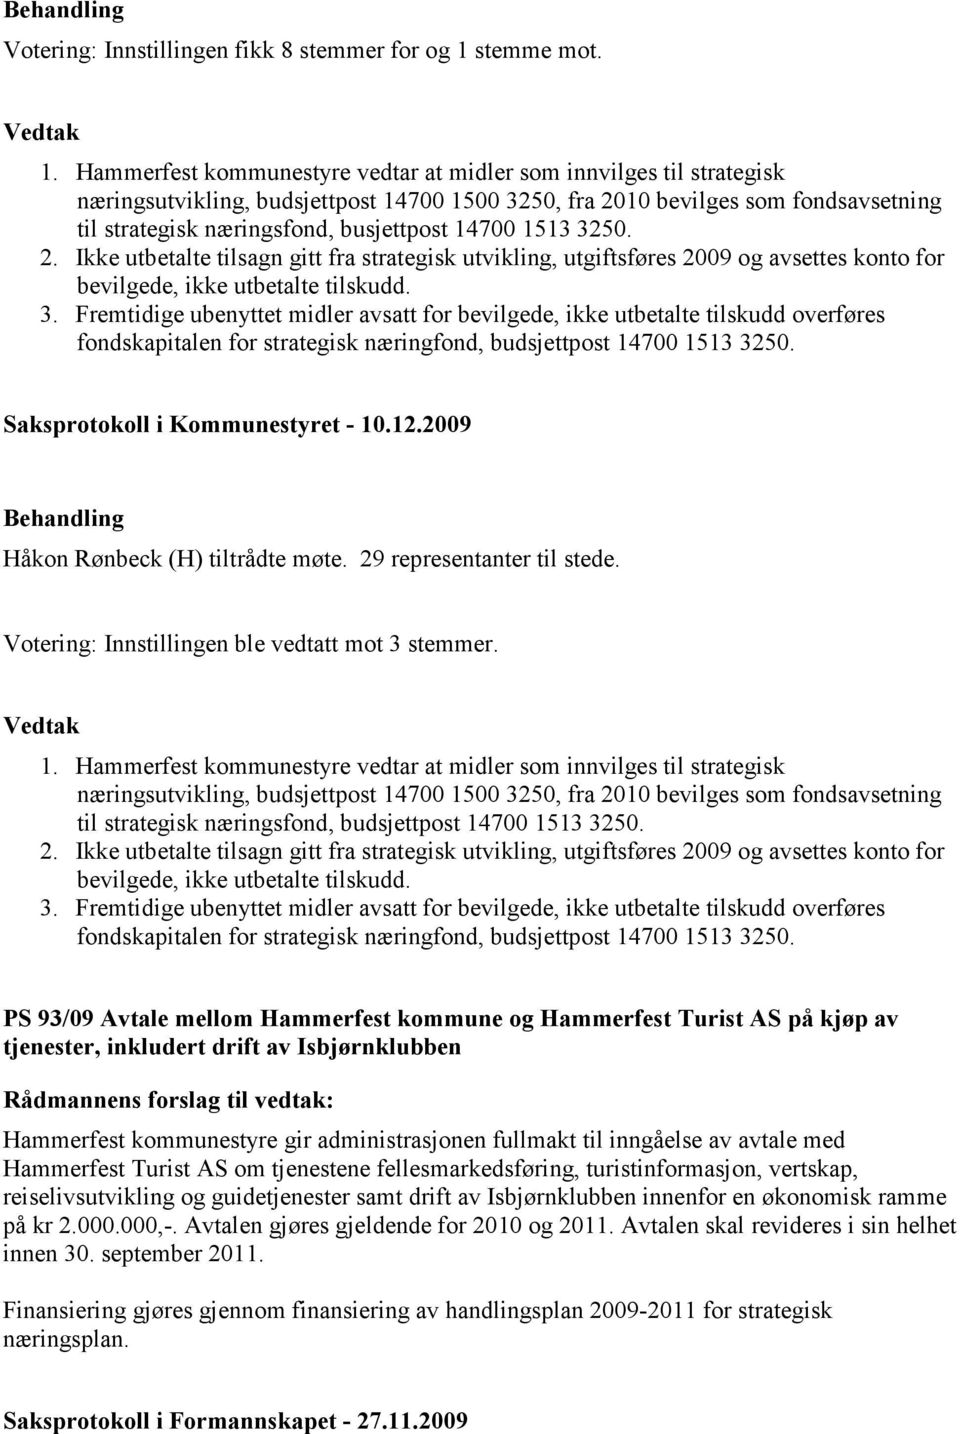 Hammerfest kommunestyre vedtar at midler som innvilges til strategisk næringsutvikling, budsjettpost 14700 1500 3250, fra 2010 bevilges som fondsavsetning til strategisk næringsfond, busjettpost